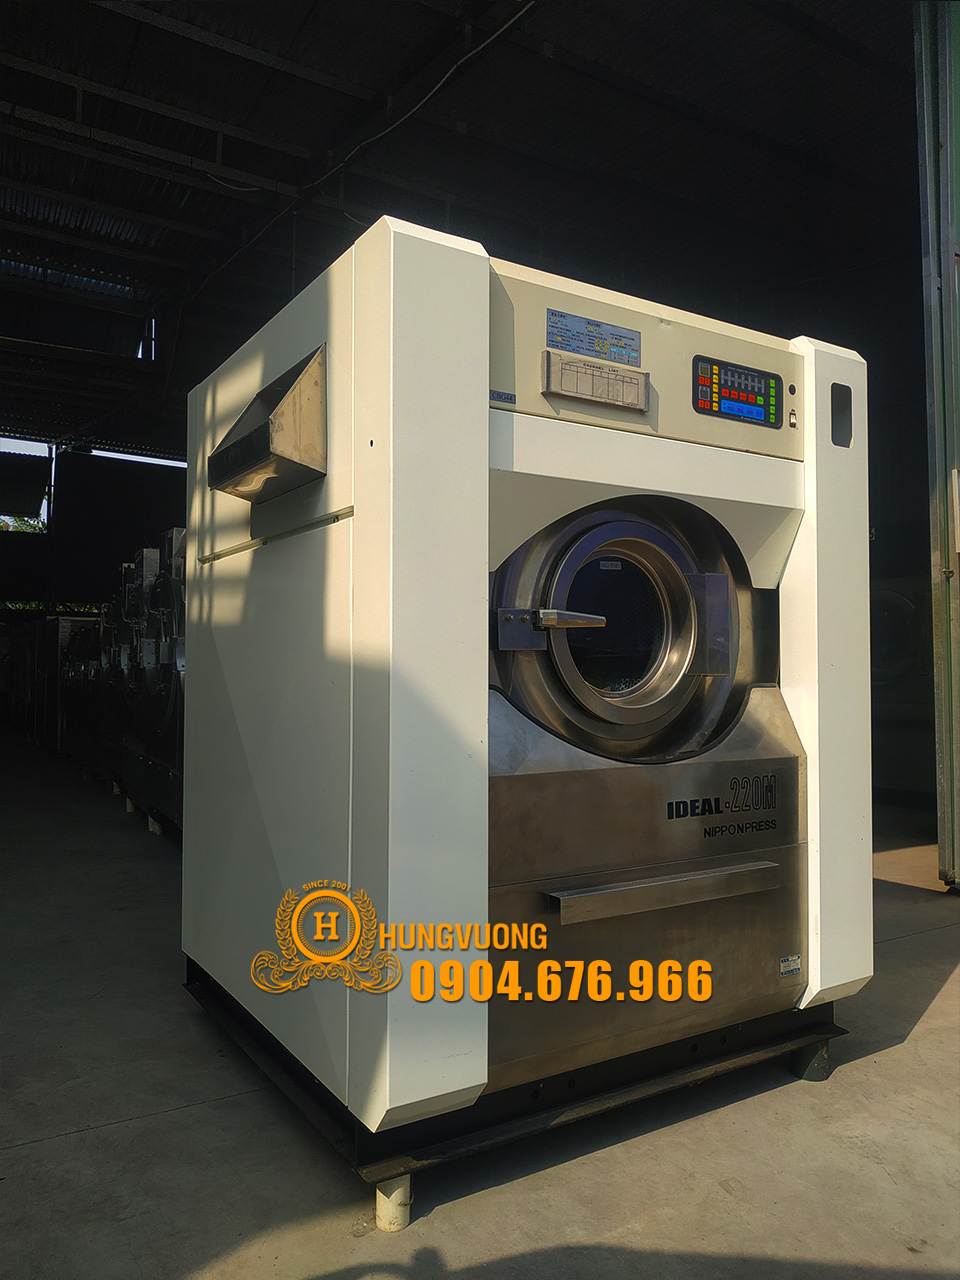 Mặt bên máy giặt công nghiệp Nhật Bản NIPPON PRESS IDEAL-220M, 22kg, chân chống rung, biến tần